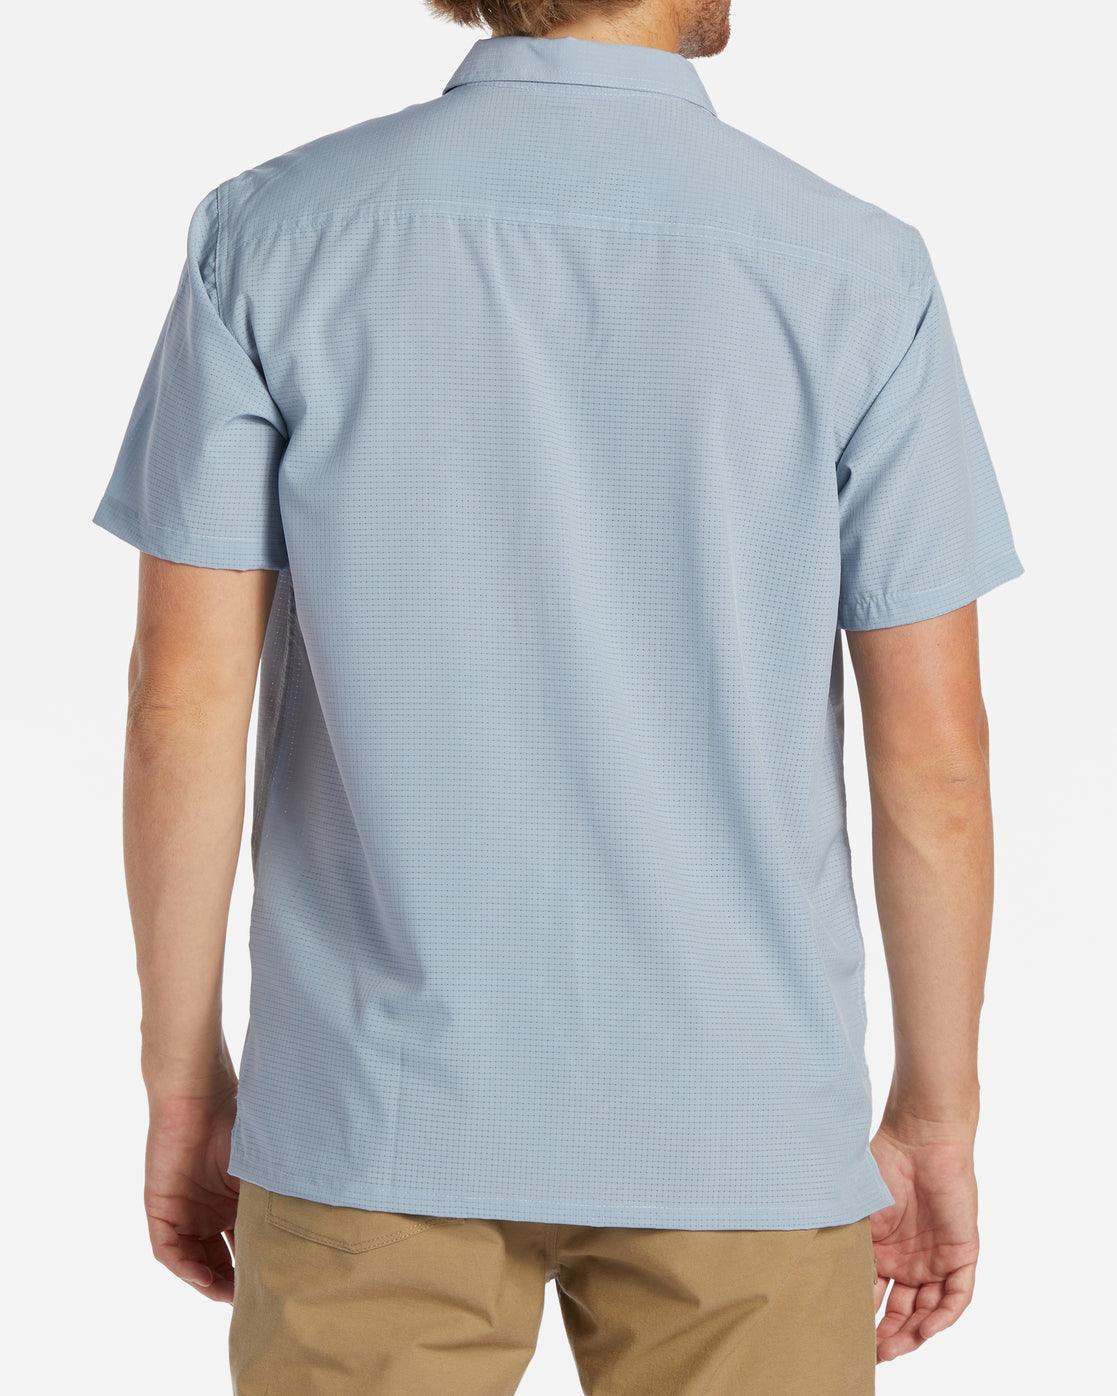 A/Div Surftrek Perf Button Shirt - SoHa Surf Shop